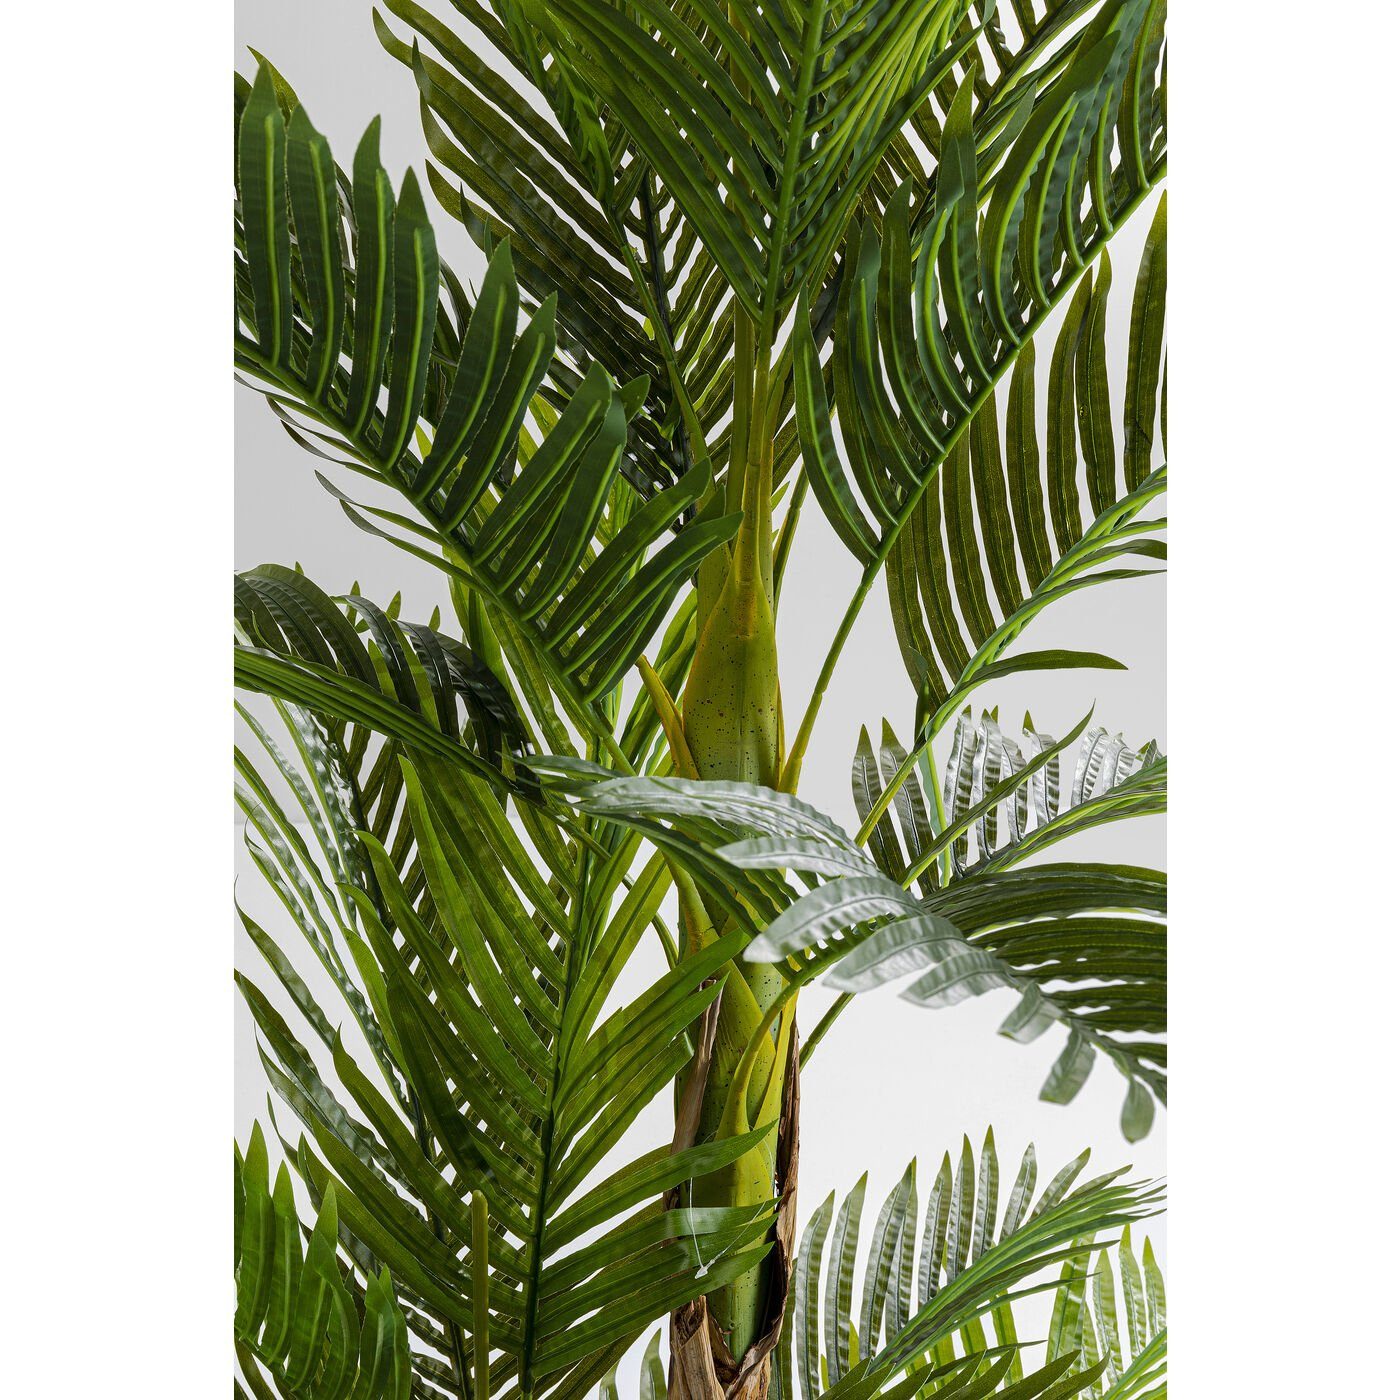 Höhe KARE, 190.0 Künstliche Tree, Zimmerpflanze cm Palm